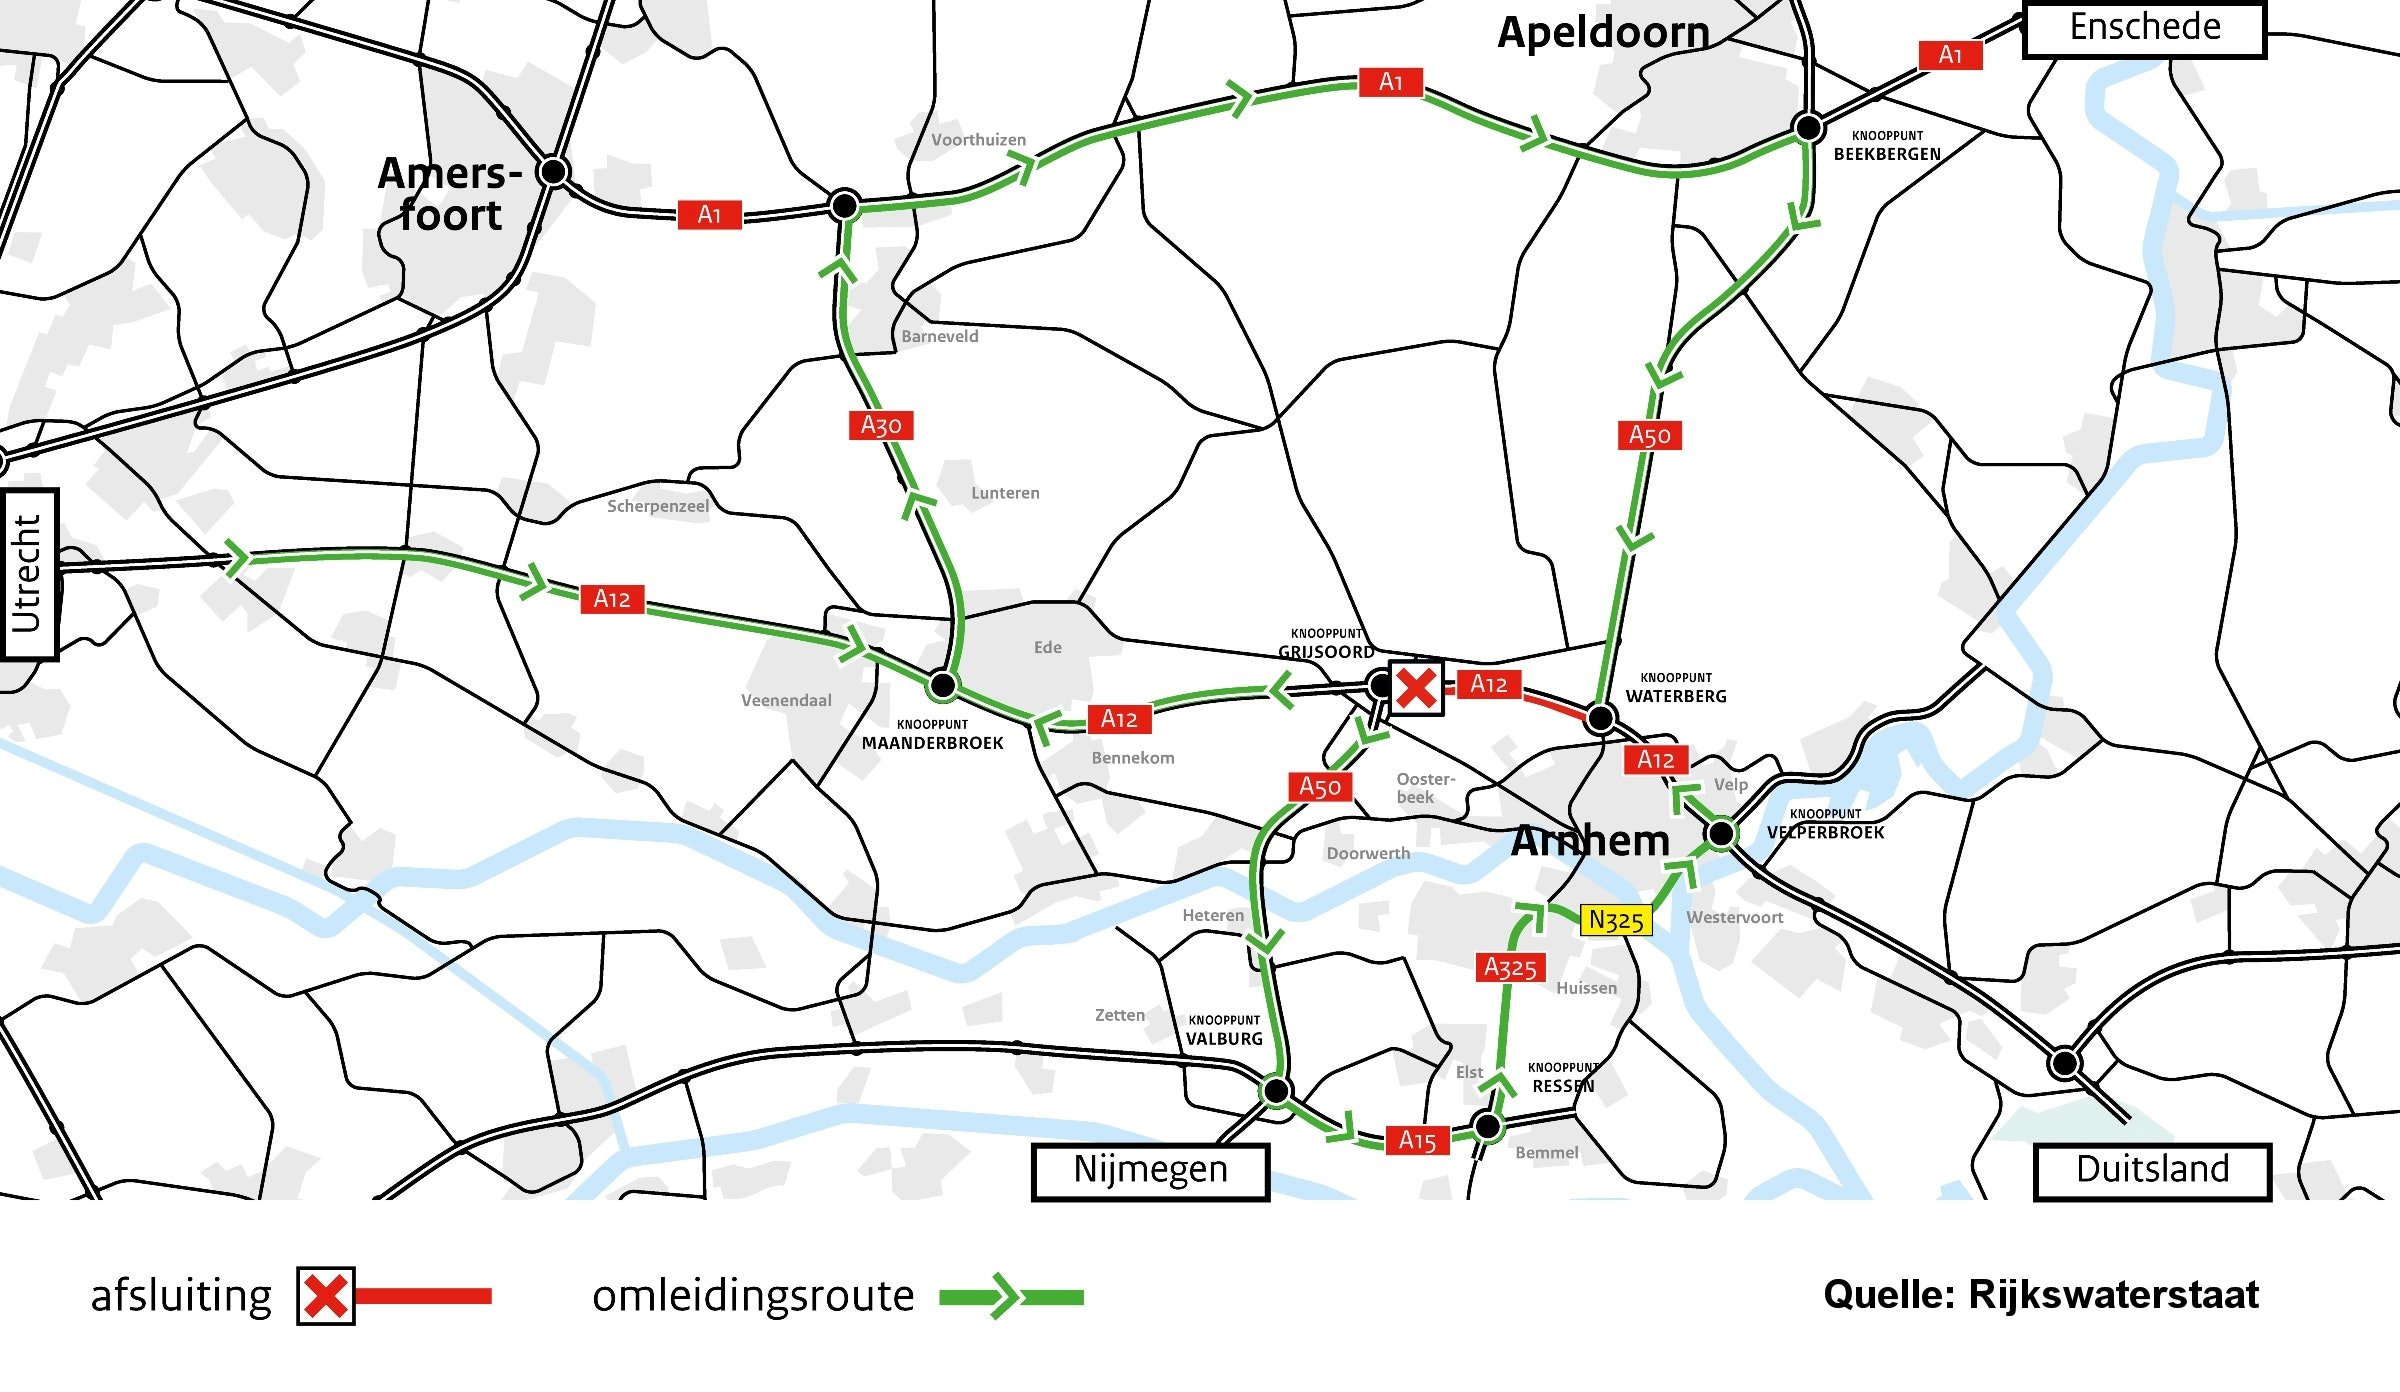 Umleitungskarte für die Sperrung der A12 zwischen Grijsoord und Waterberg | Quelle: Rijkswaterstaat